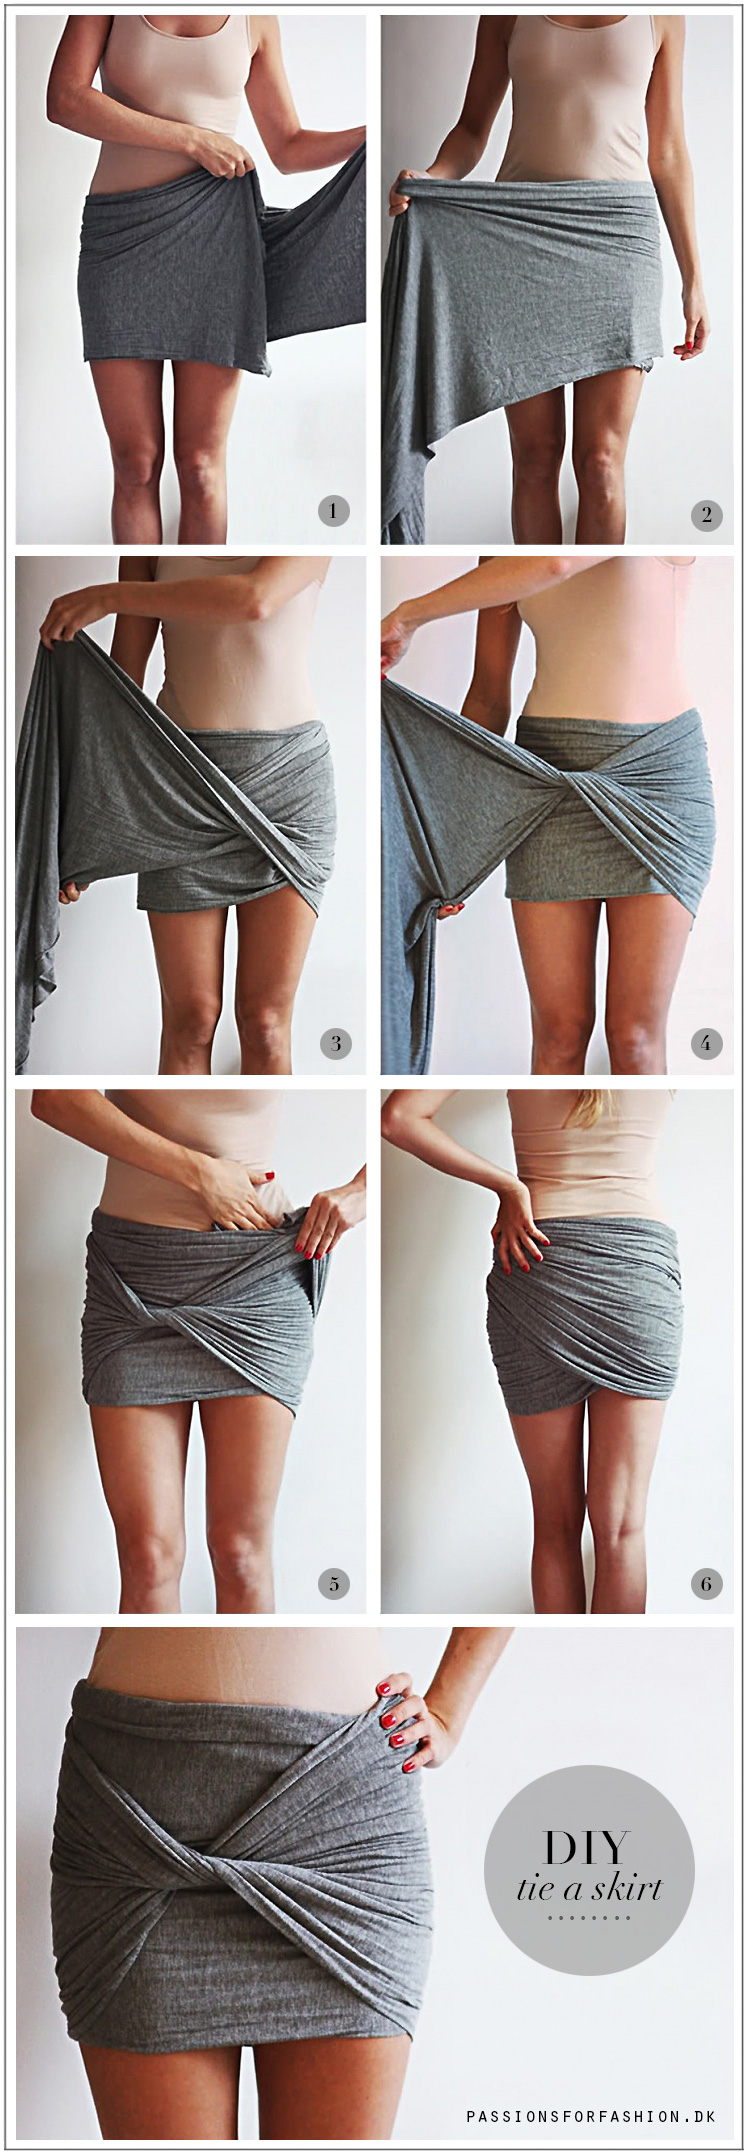 draped-skirt@2x